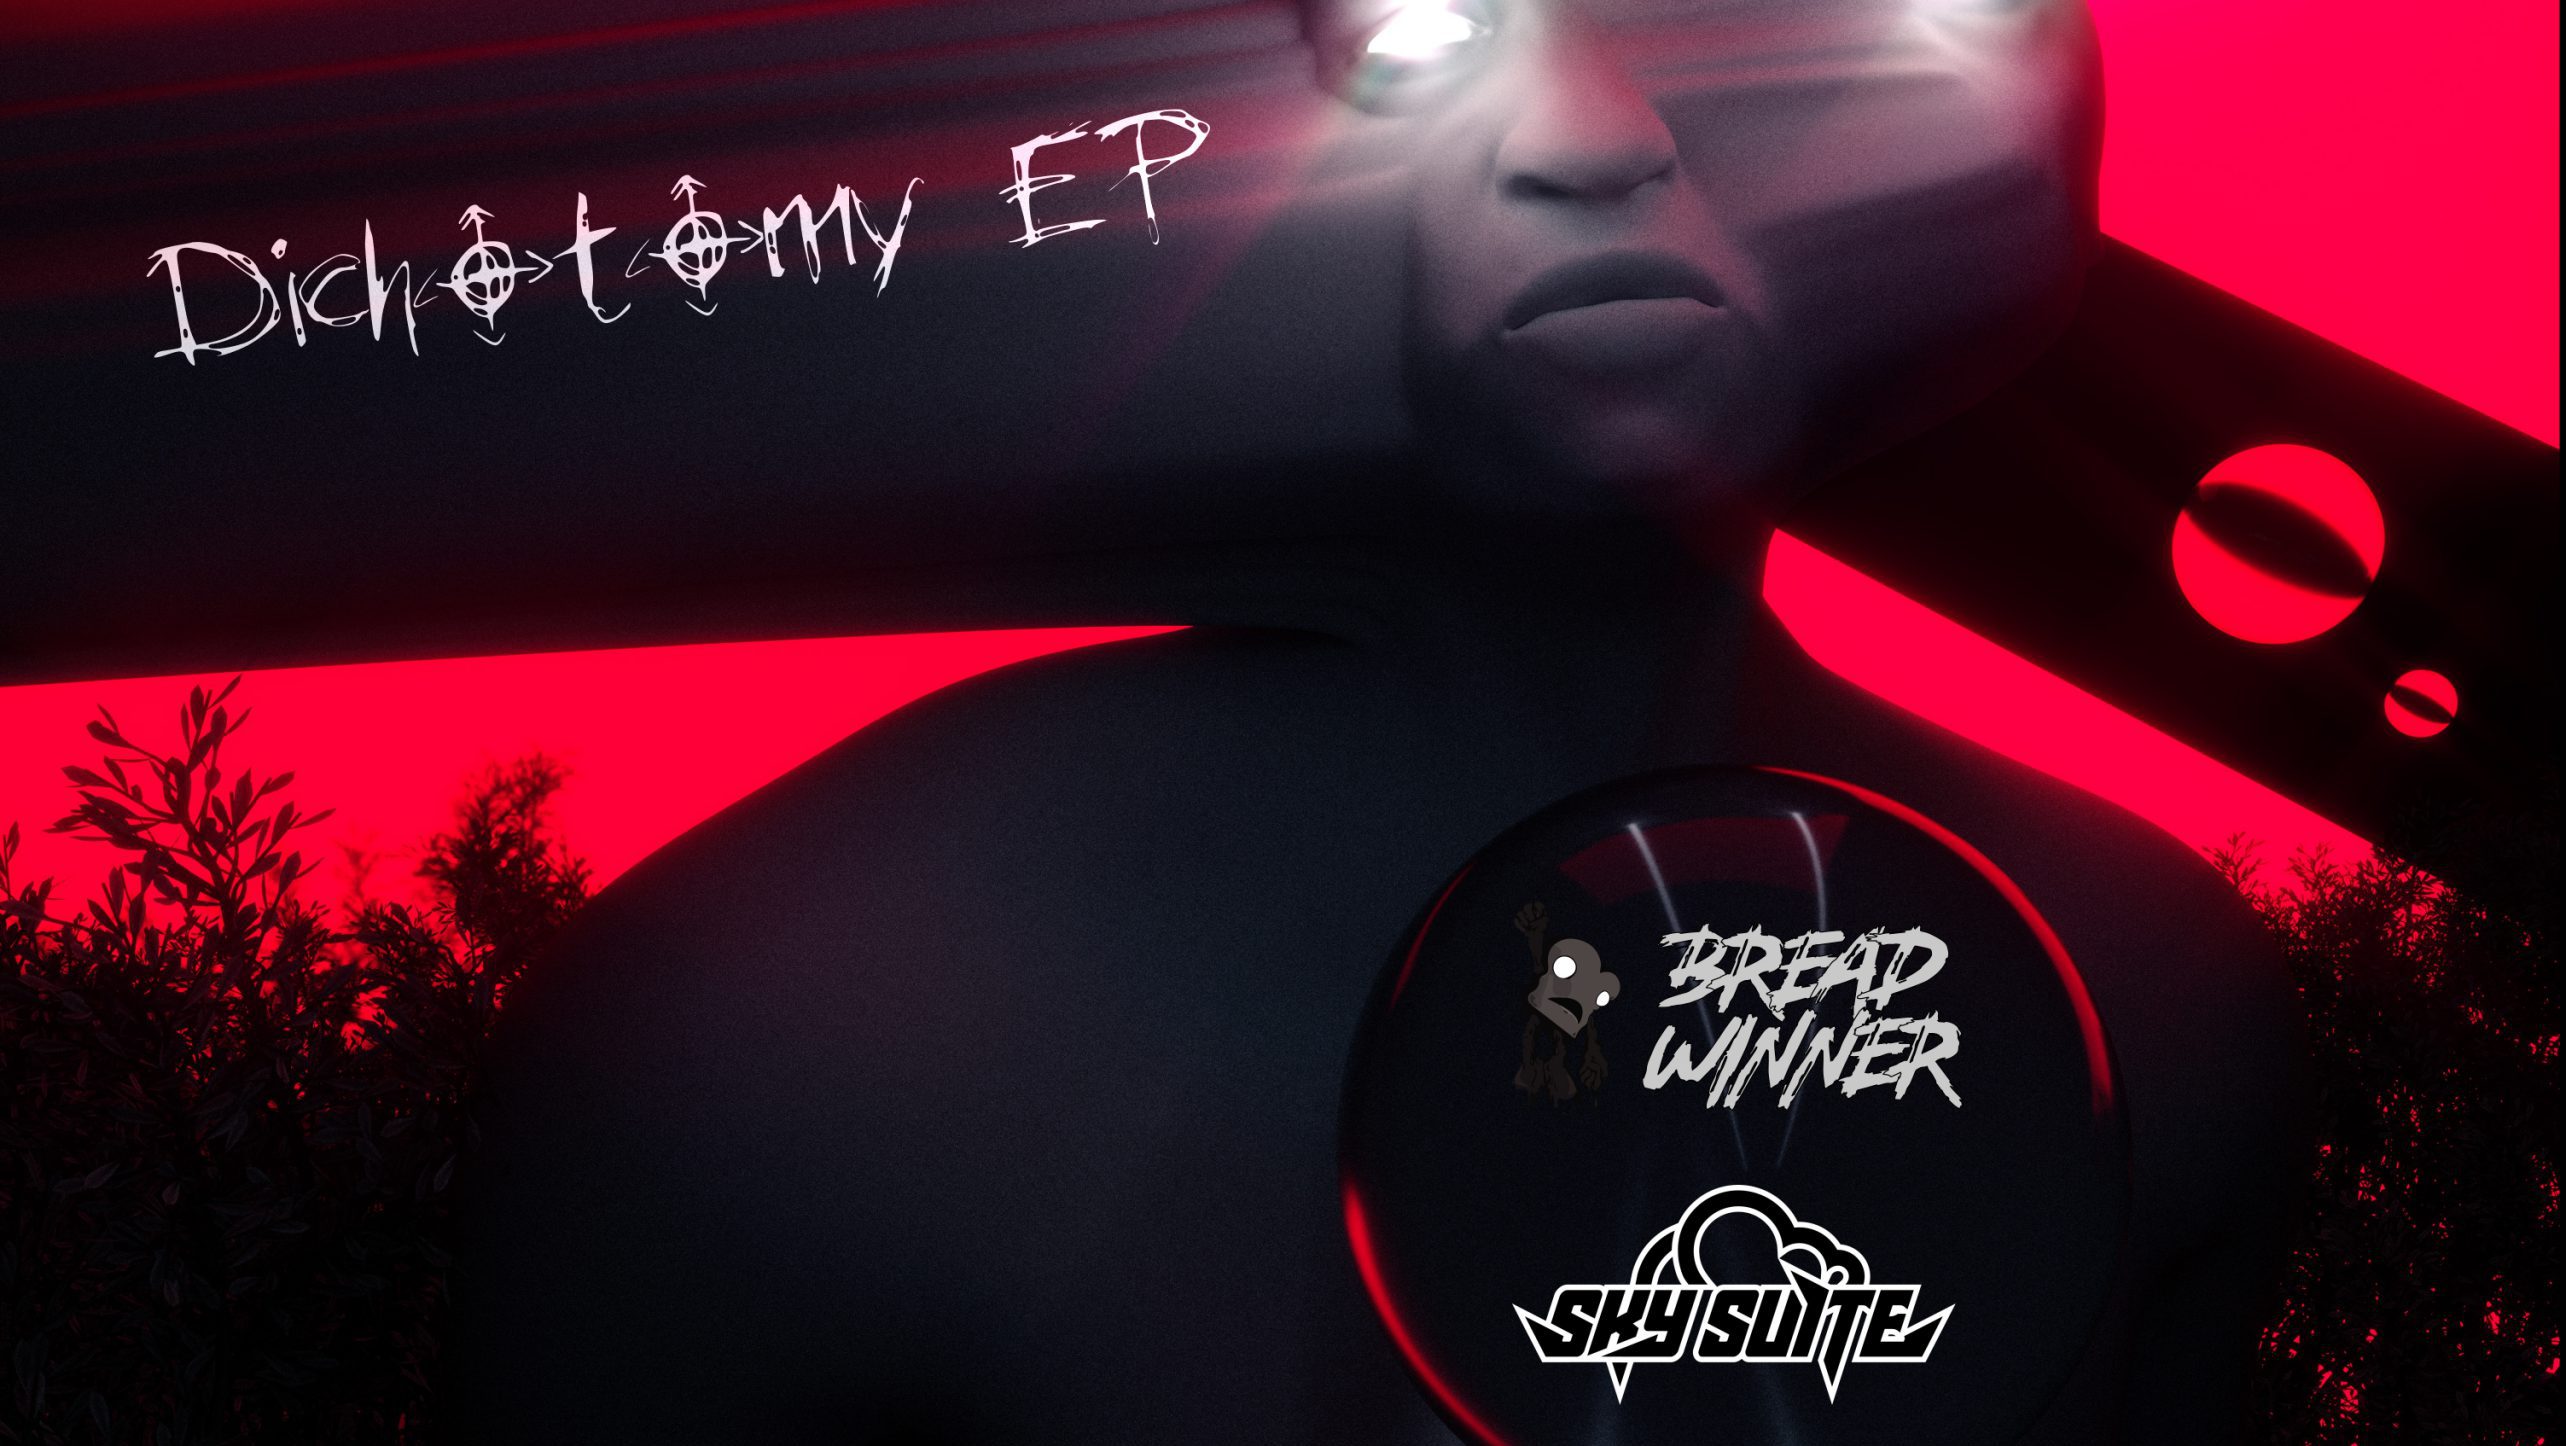 Sky Suite x Bread Winner - Dichotomy EP